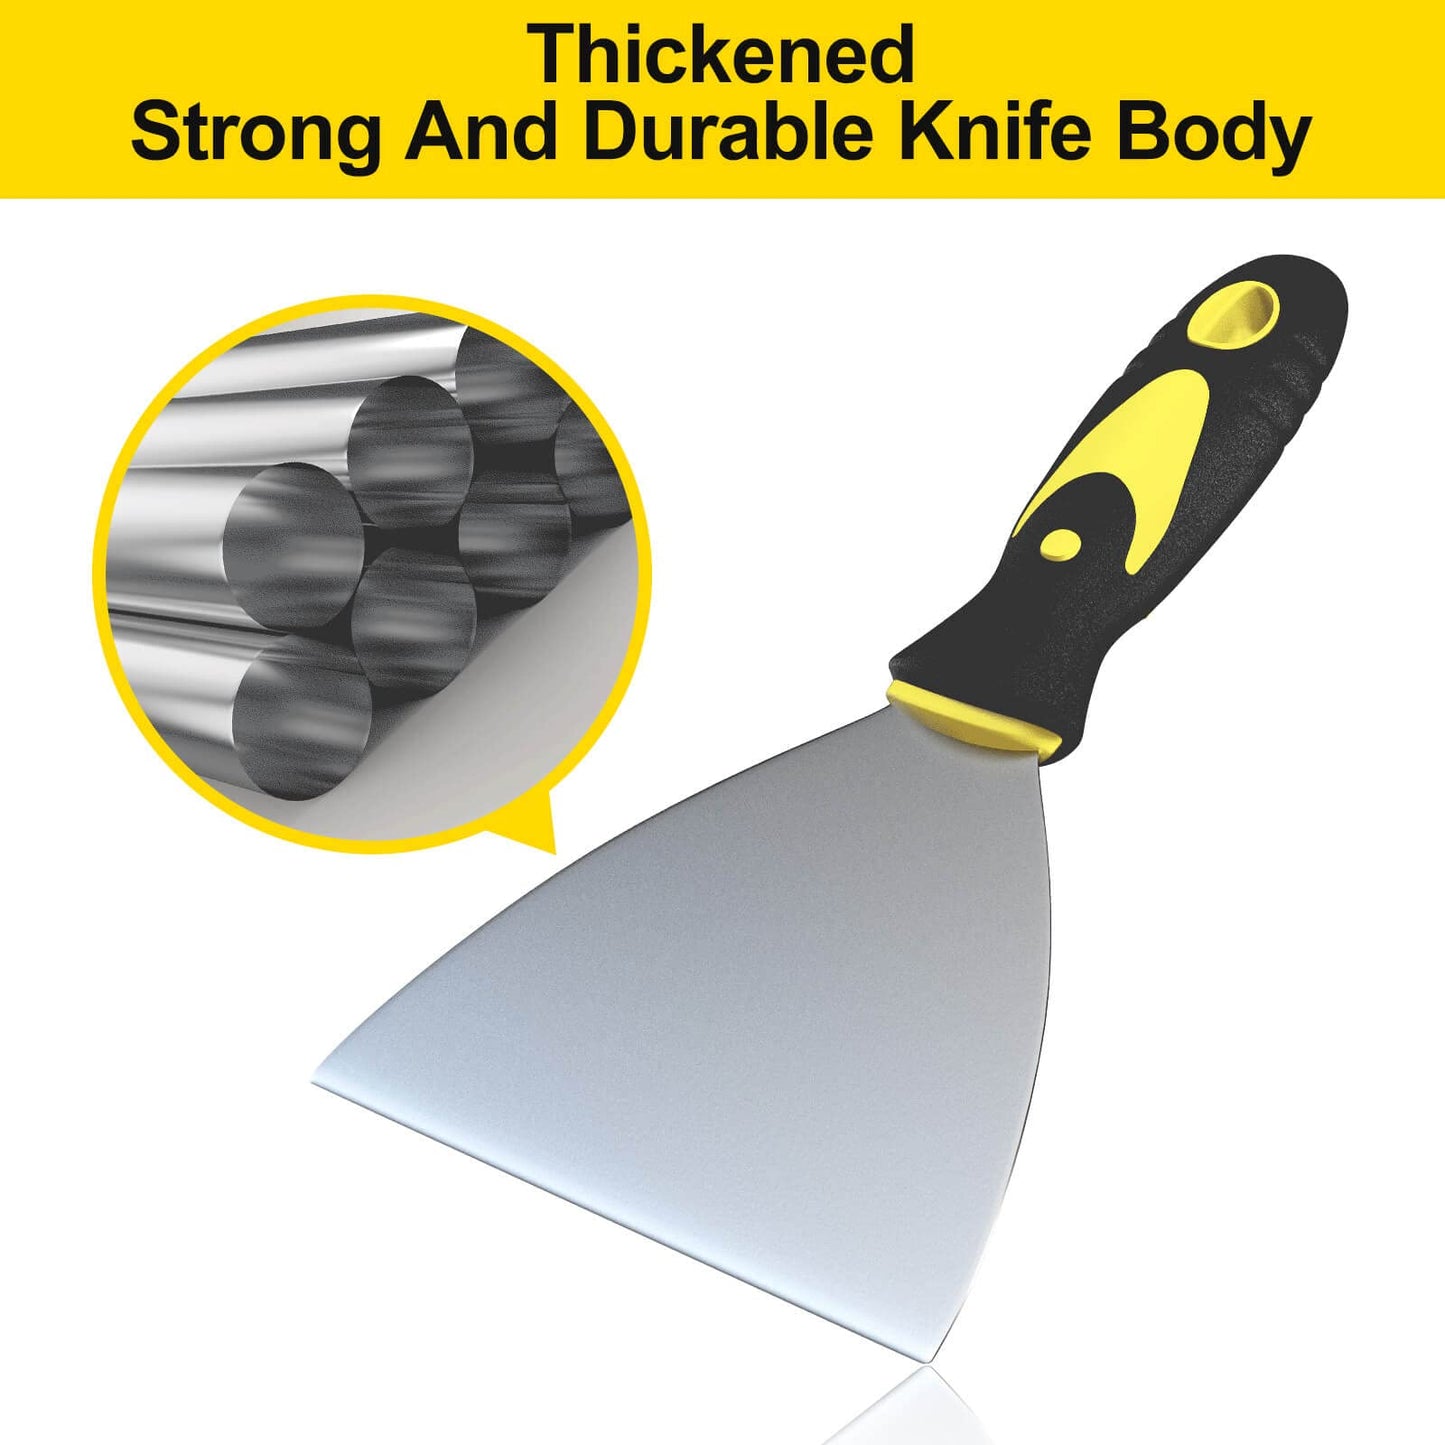 5Pcs Putty Knife, Set, 1" 2" 3" 4" 5" Scraper, Spackle Knife, Paint Scraper, Scraper Tool, No Rusting, Perfect For Repairing Drywall, Removing